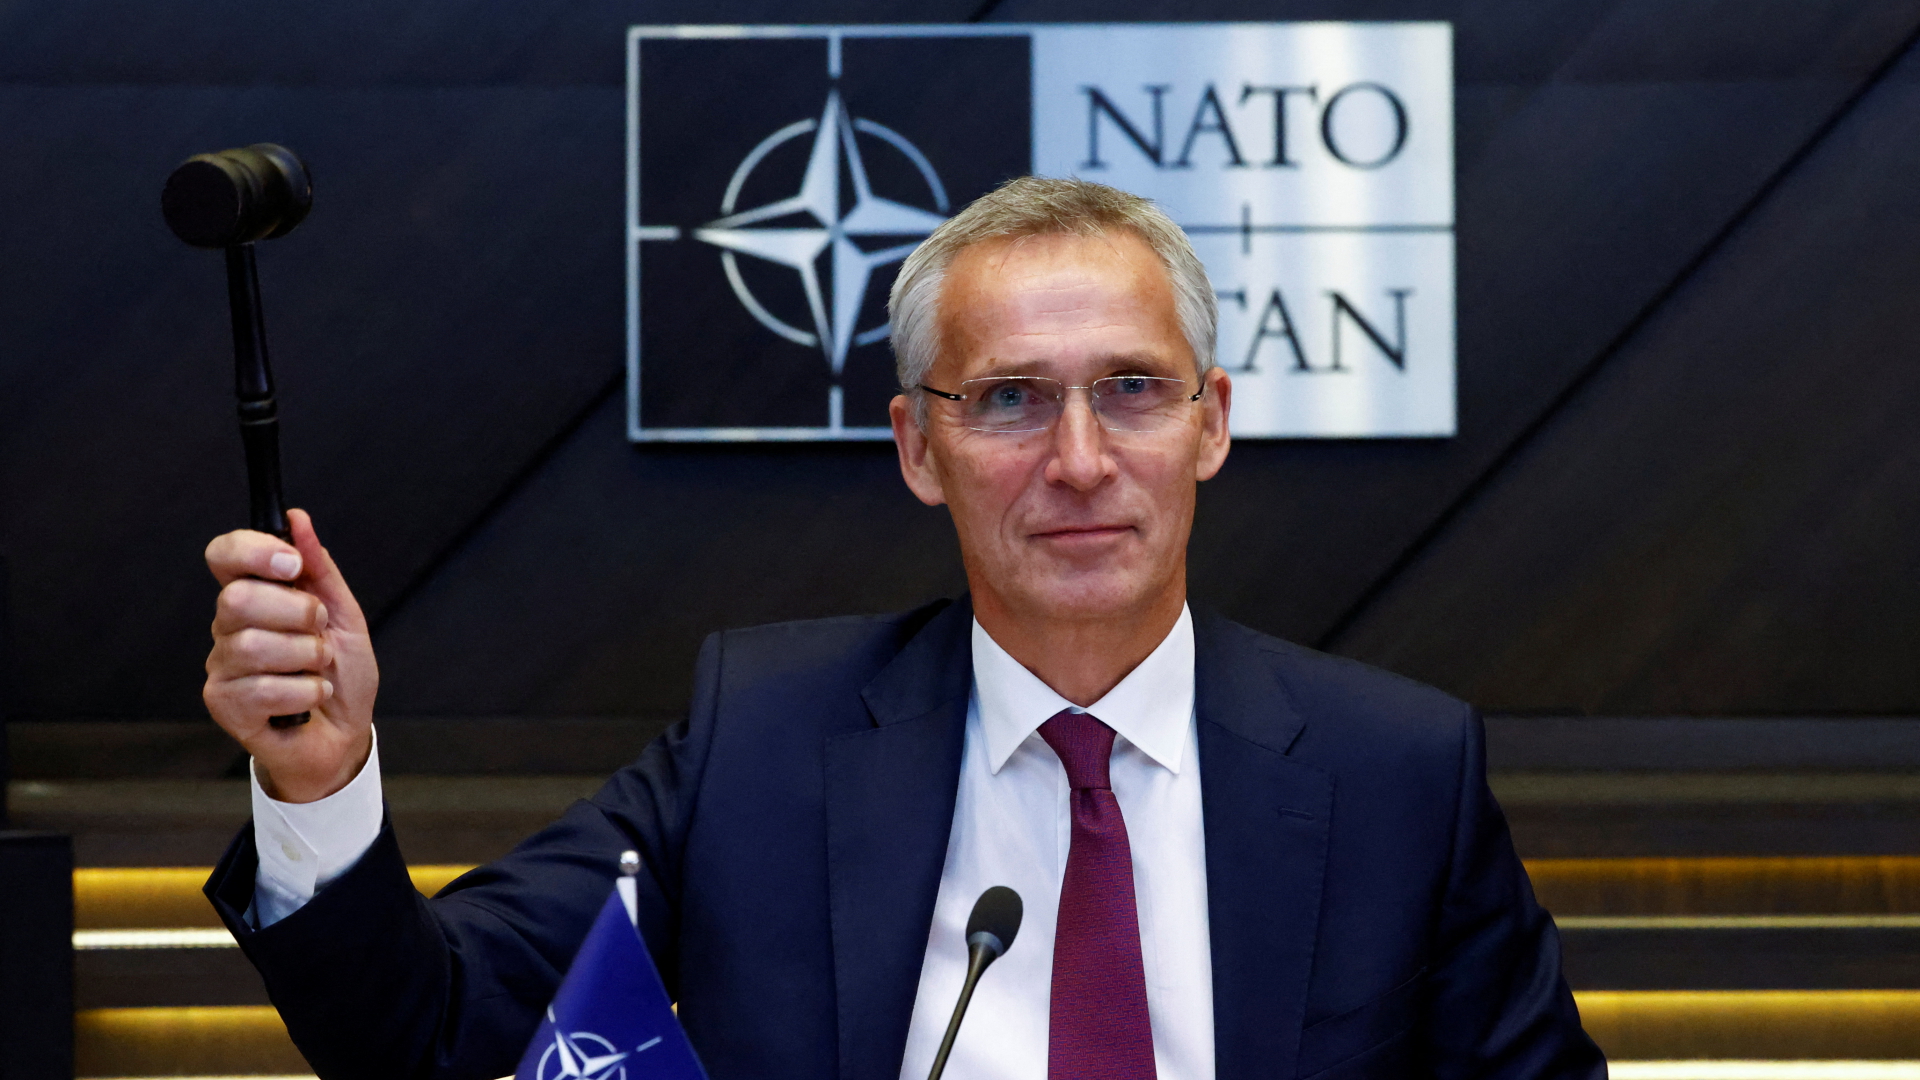 NATO-Generalsekretär Stoltenberg: “Leben in einer gefährlichen Situation”